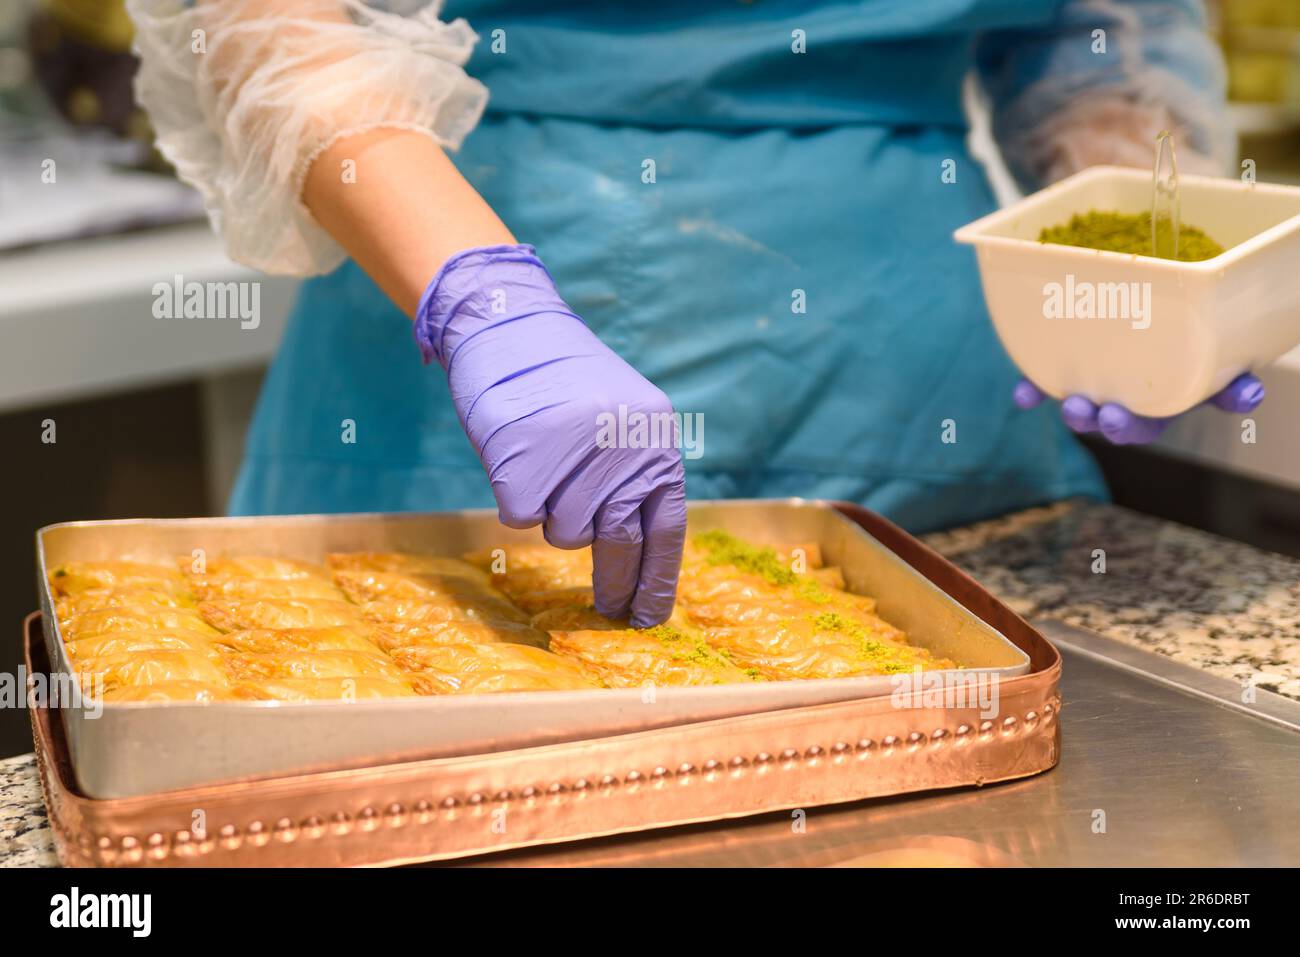 Gros plan des mains préparant des sucreries traditionnelles turques de baklava avec pistache à l'intérieur d'une boulangerie à Istanbul. Fabrication de baklava Banque D'Images